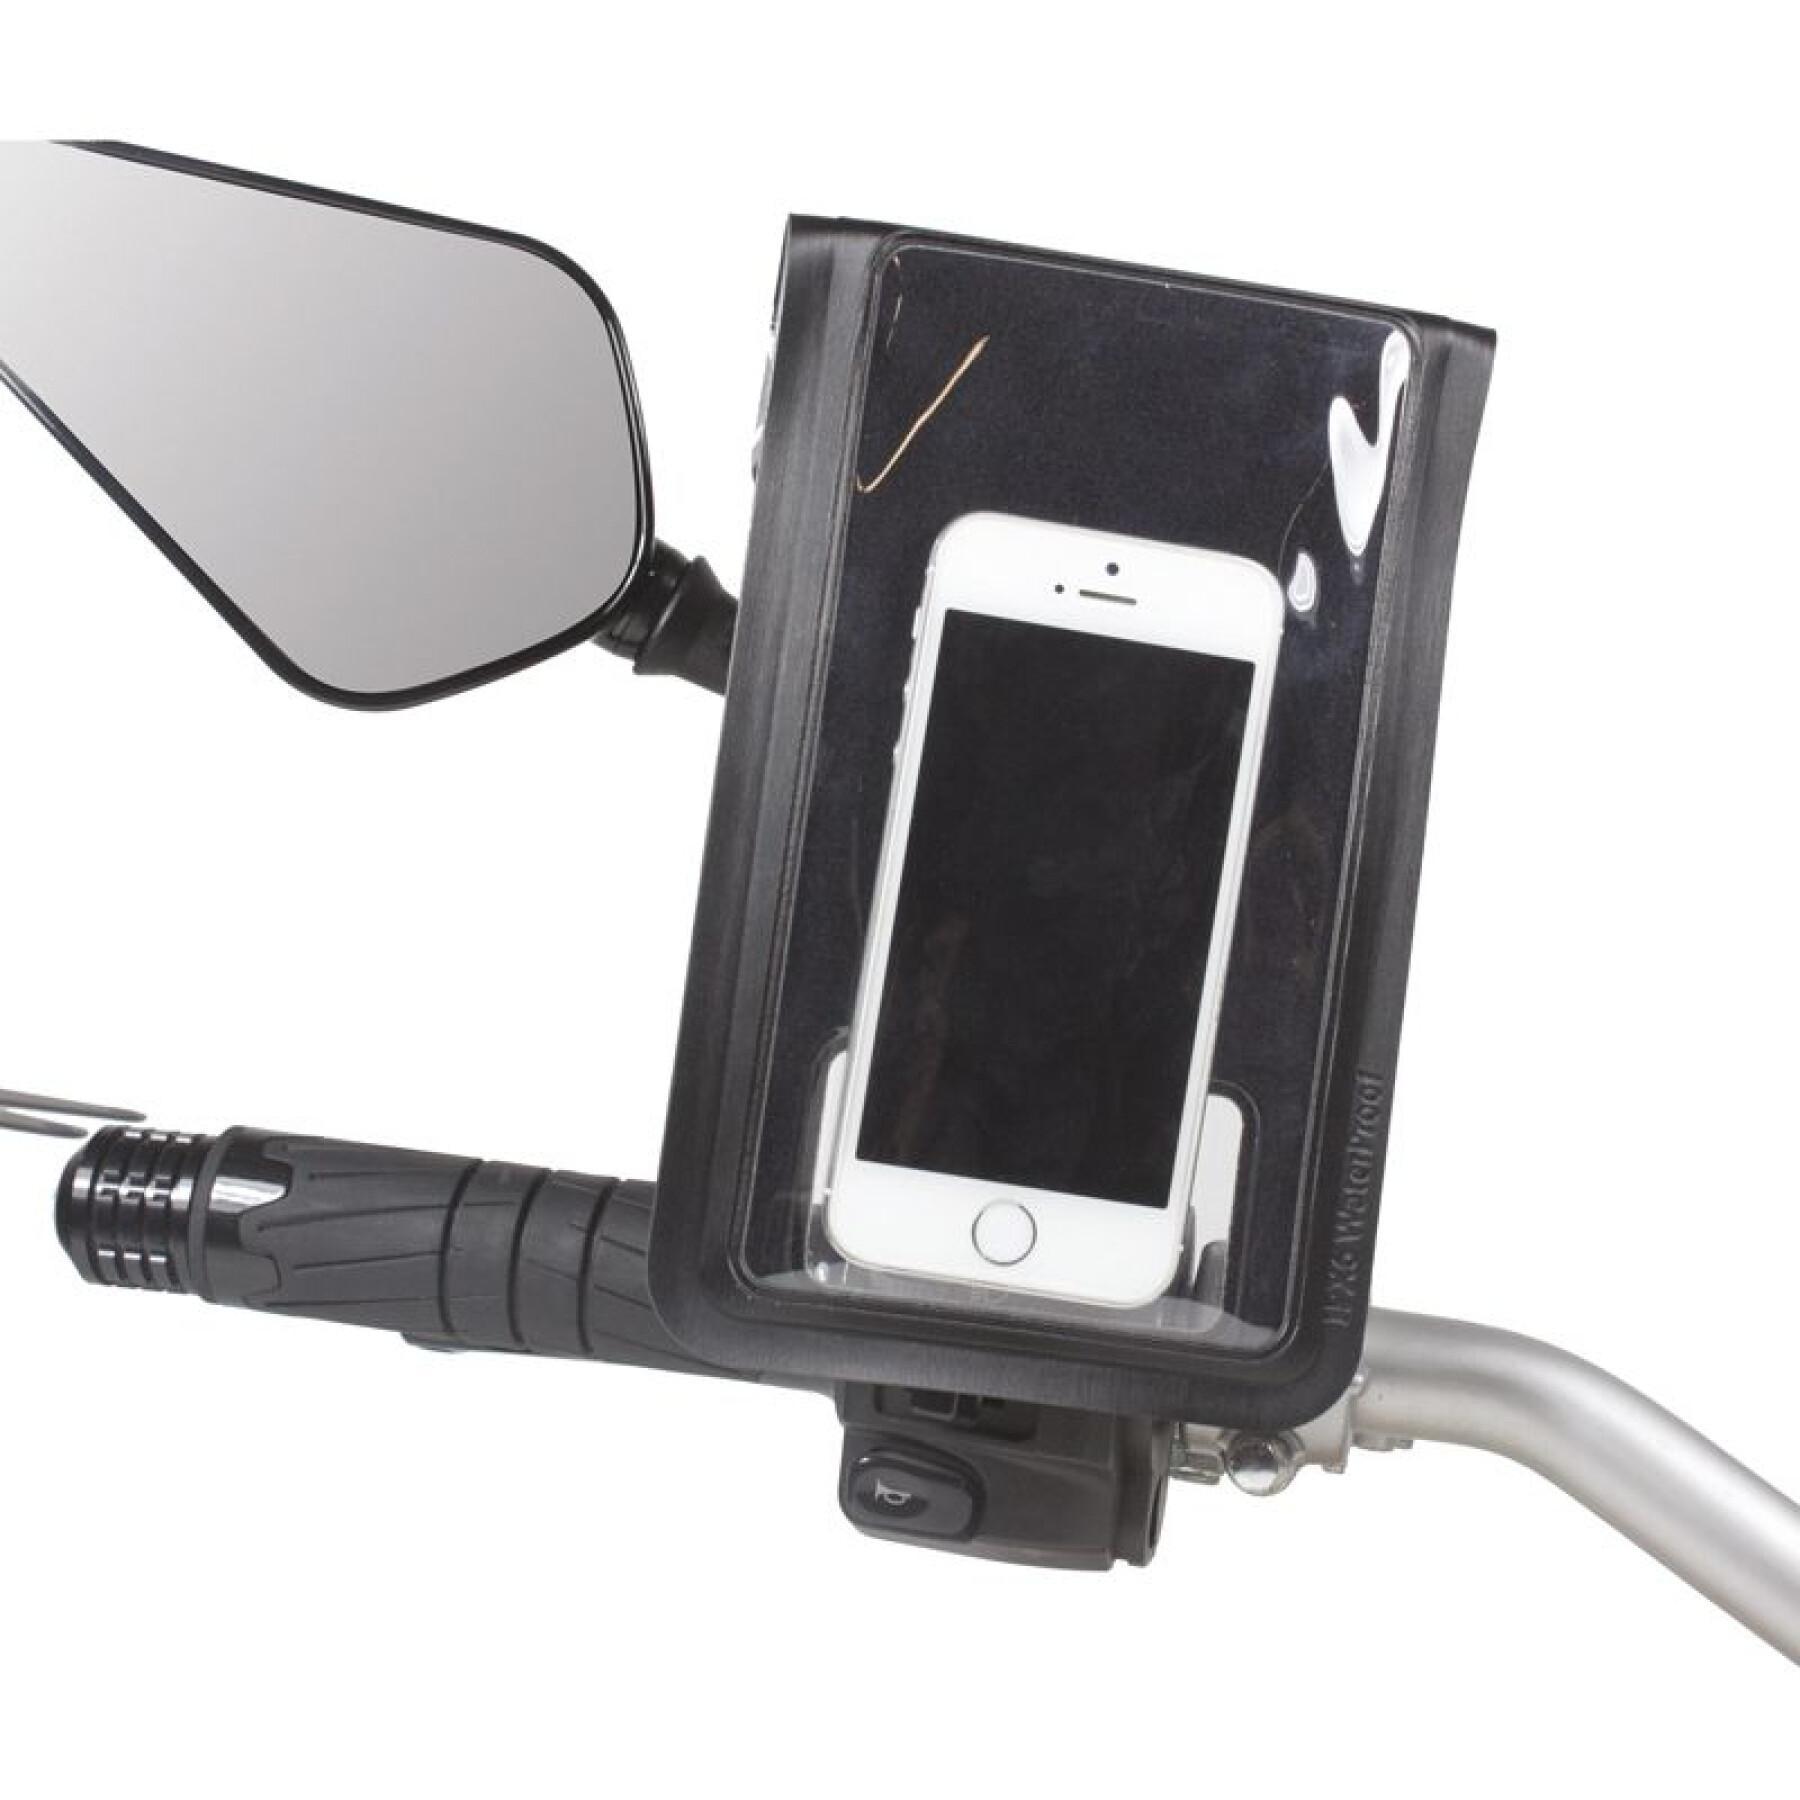 Motor smartphone houder op achteruitkijkspiegel met oplader Chaft